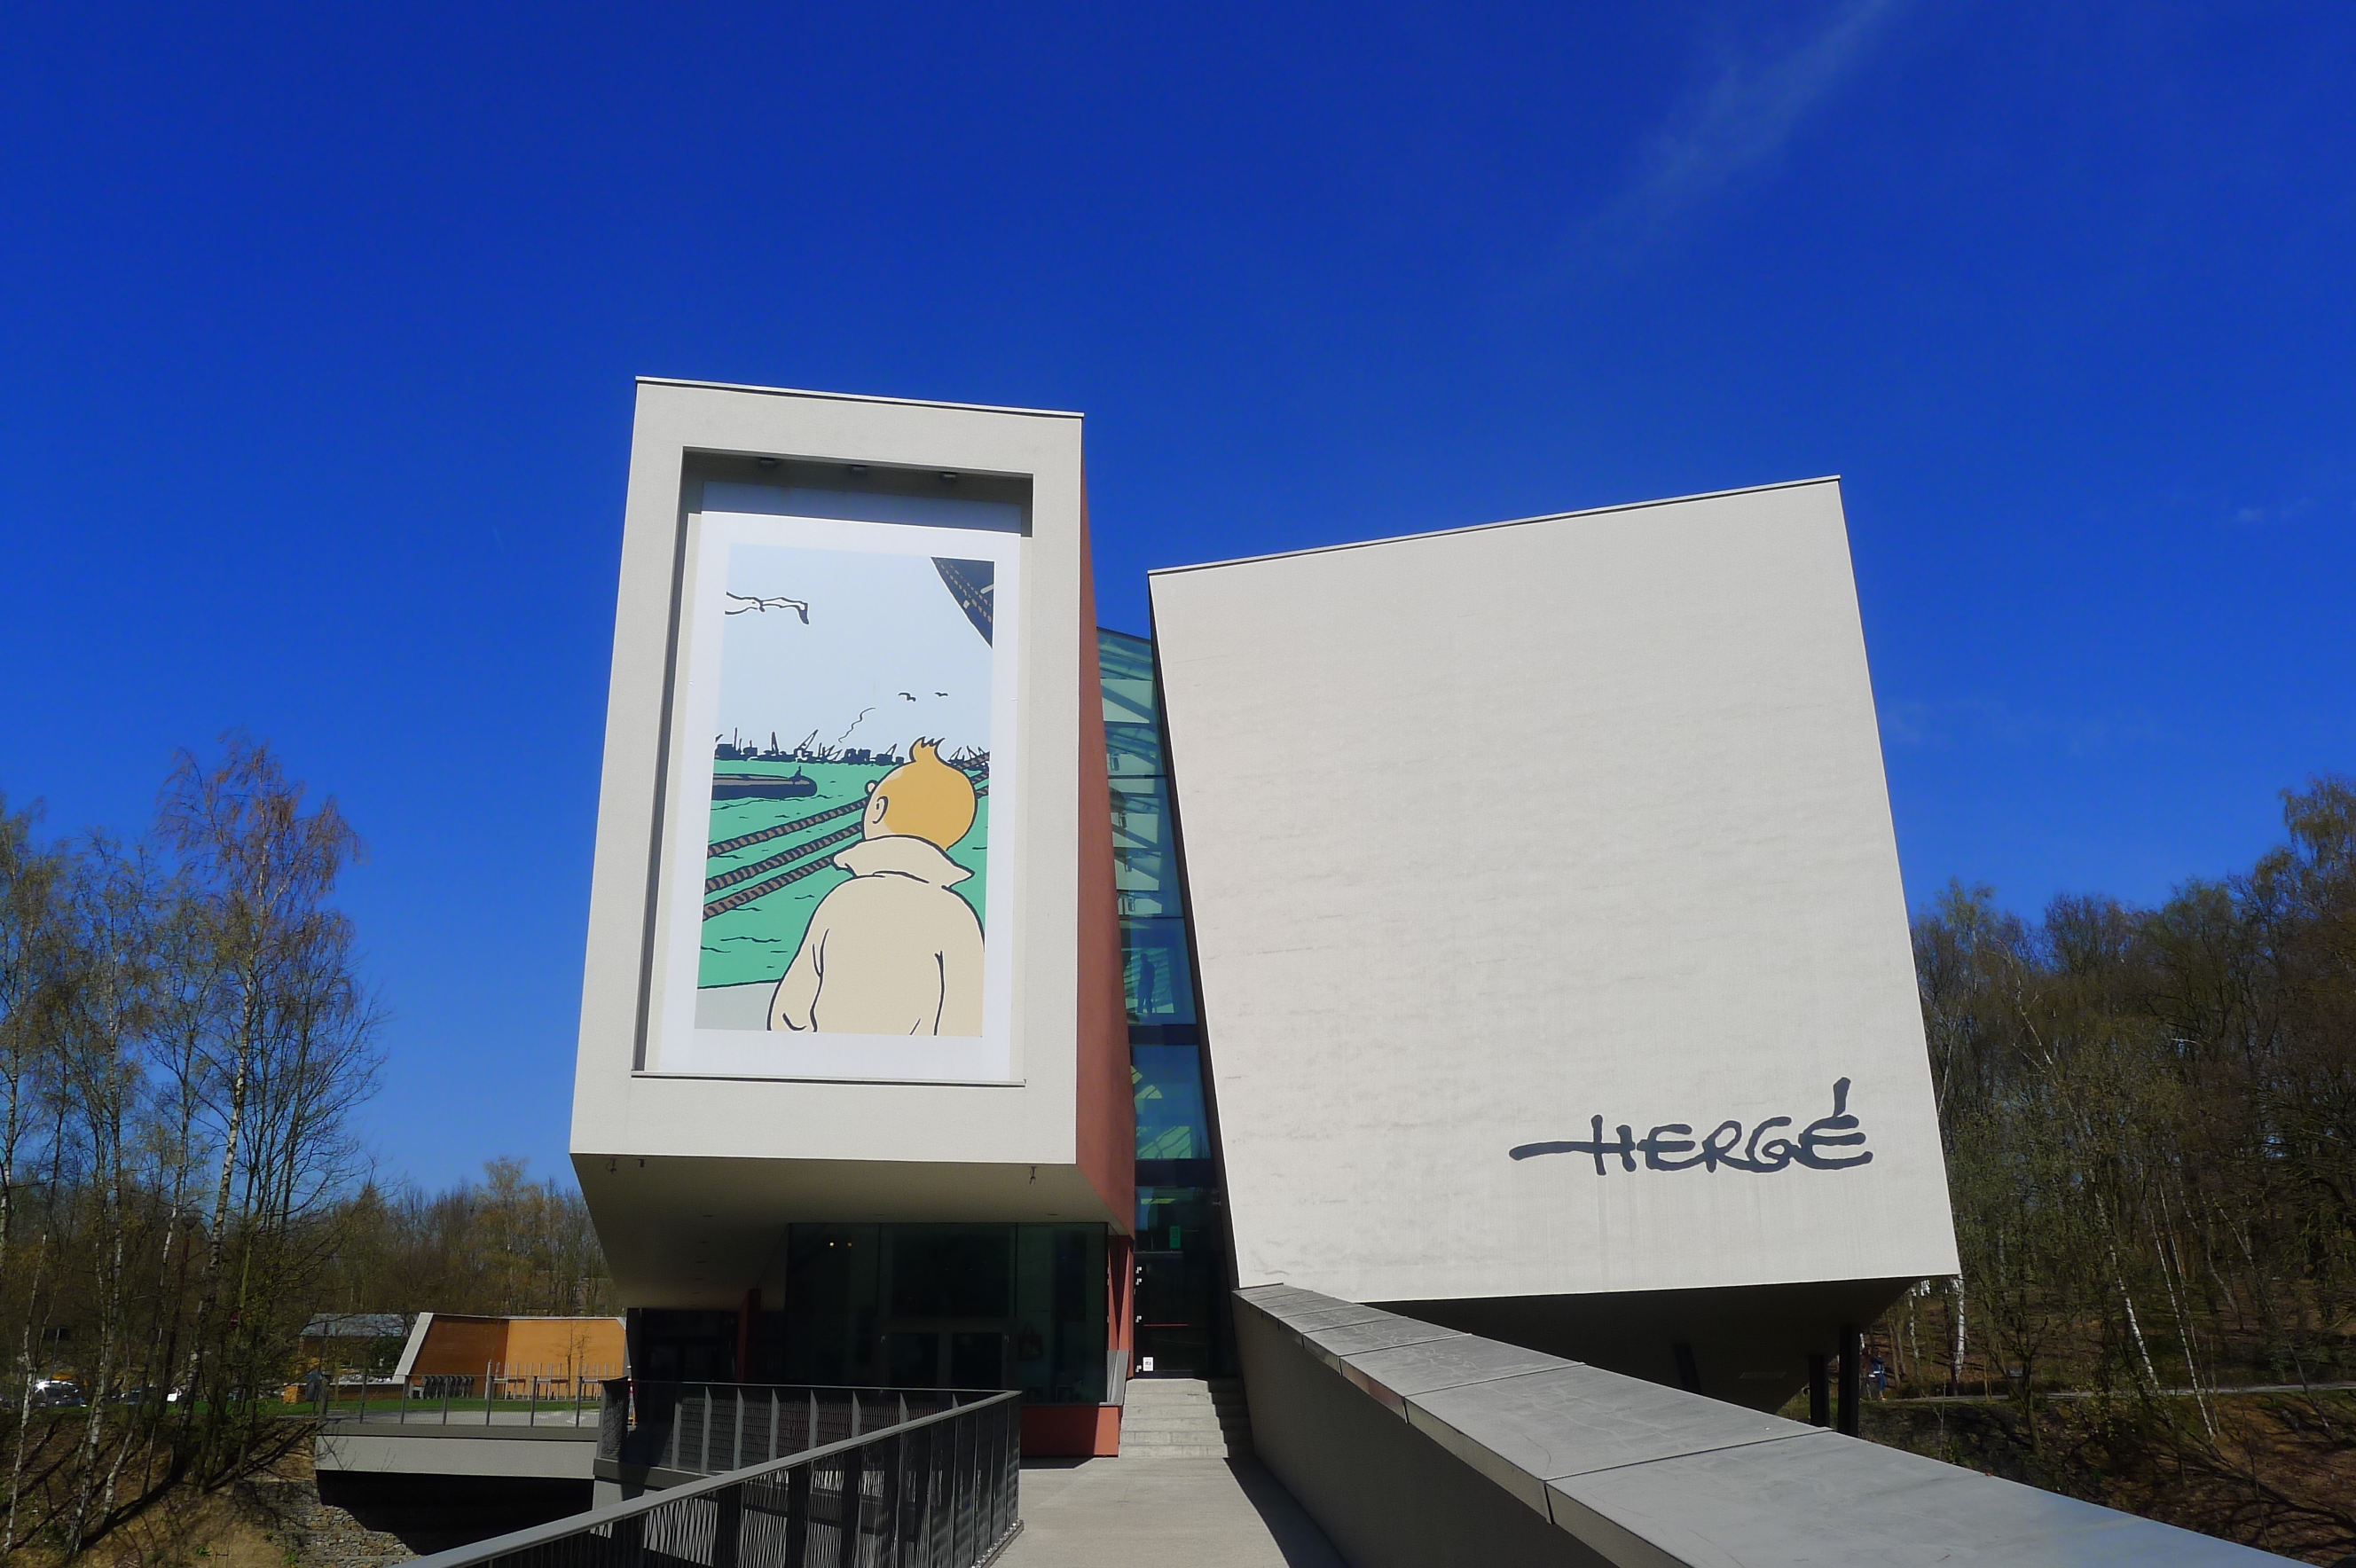 Tintin megalkotójának, Hergének a munkásságát bemutató múzeum Louvain-la-Neuve-ben